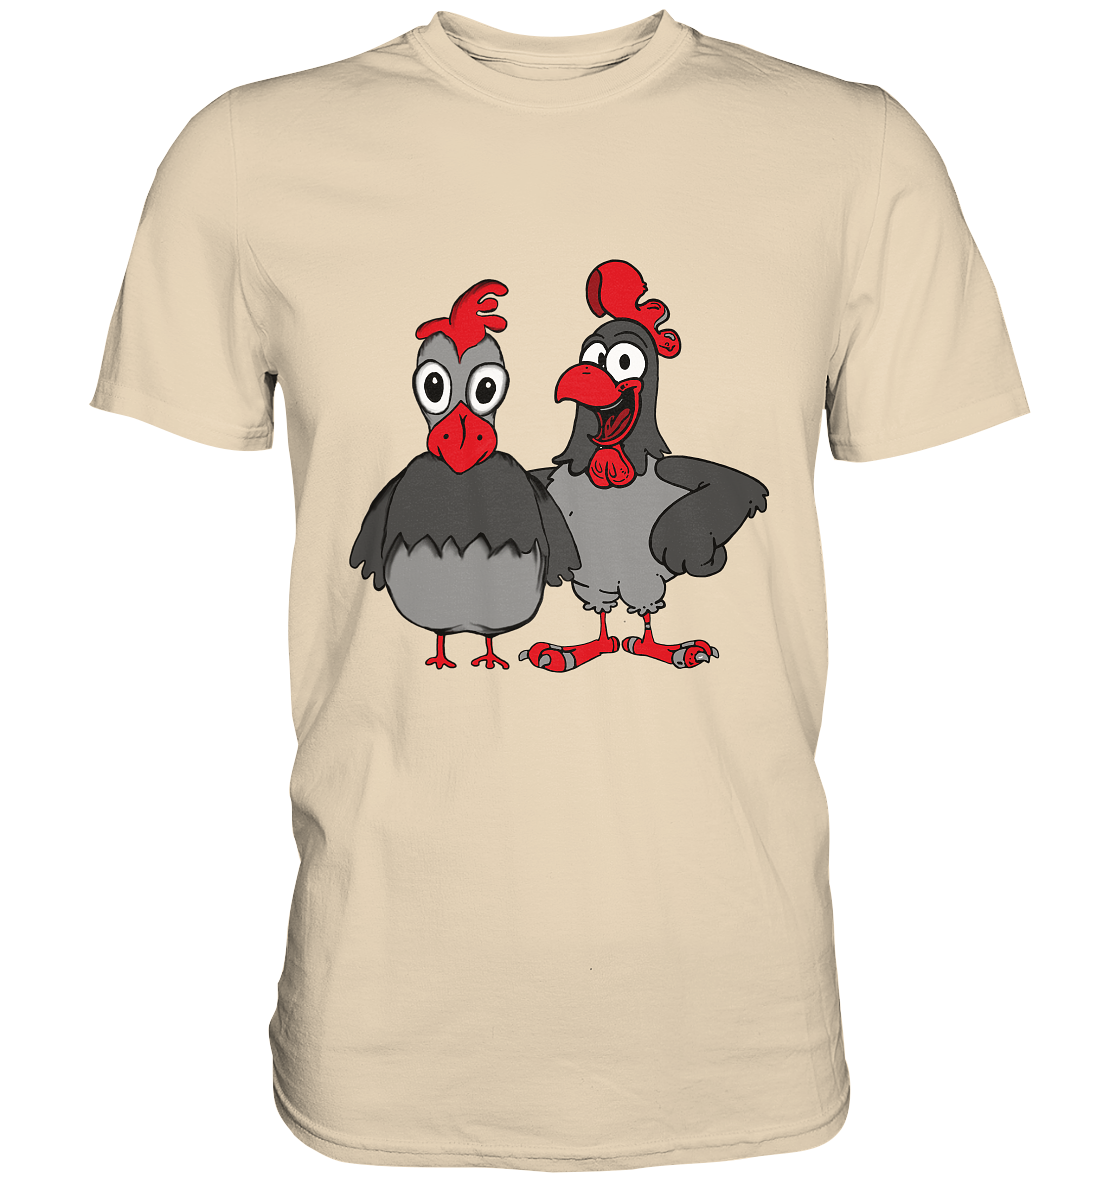 Hahn und Henne. Gockel Hühner Hühnerbauer - Premium Shirt